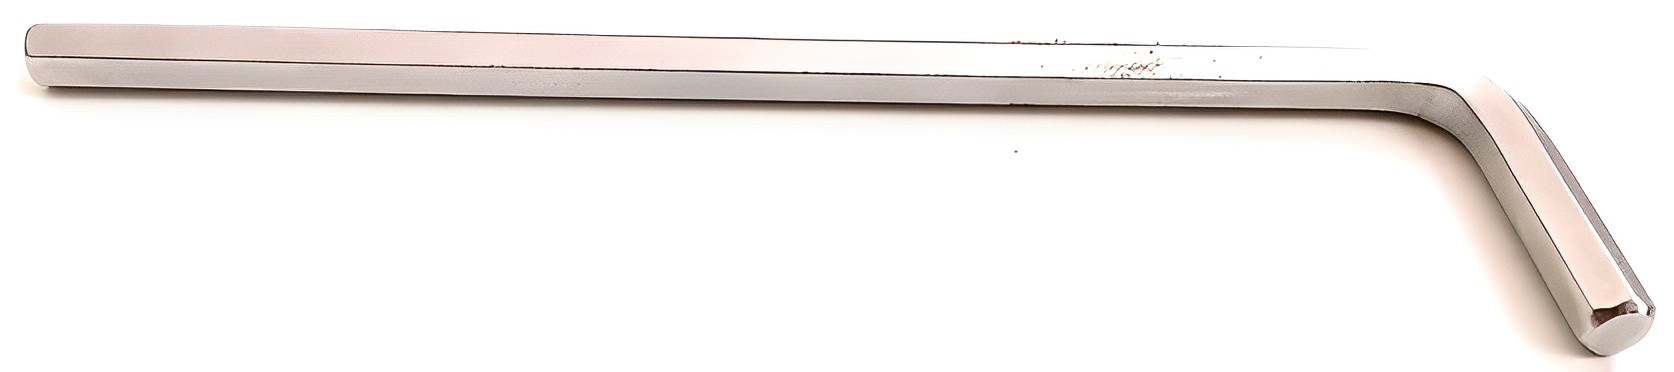 Hình ảnh 1 của mặt hàng Lục giác dài 6mm Stanley STMT94116-8